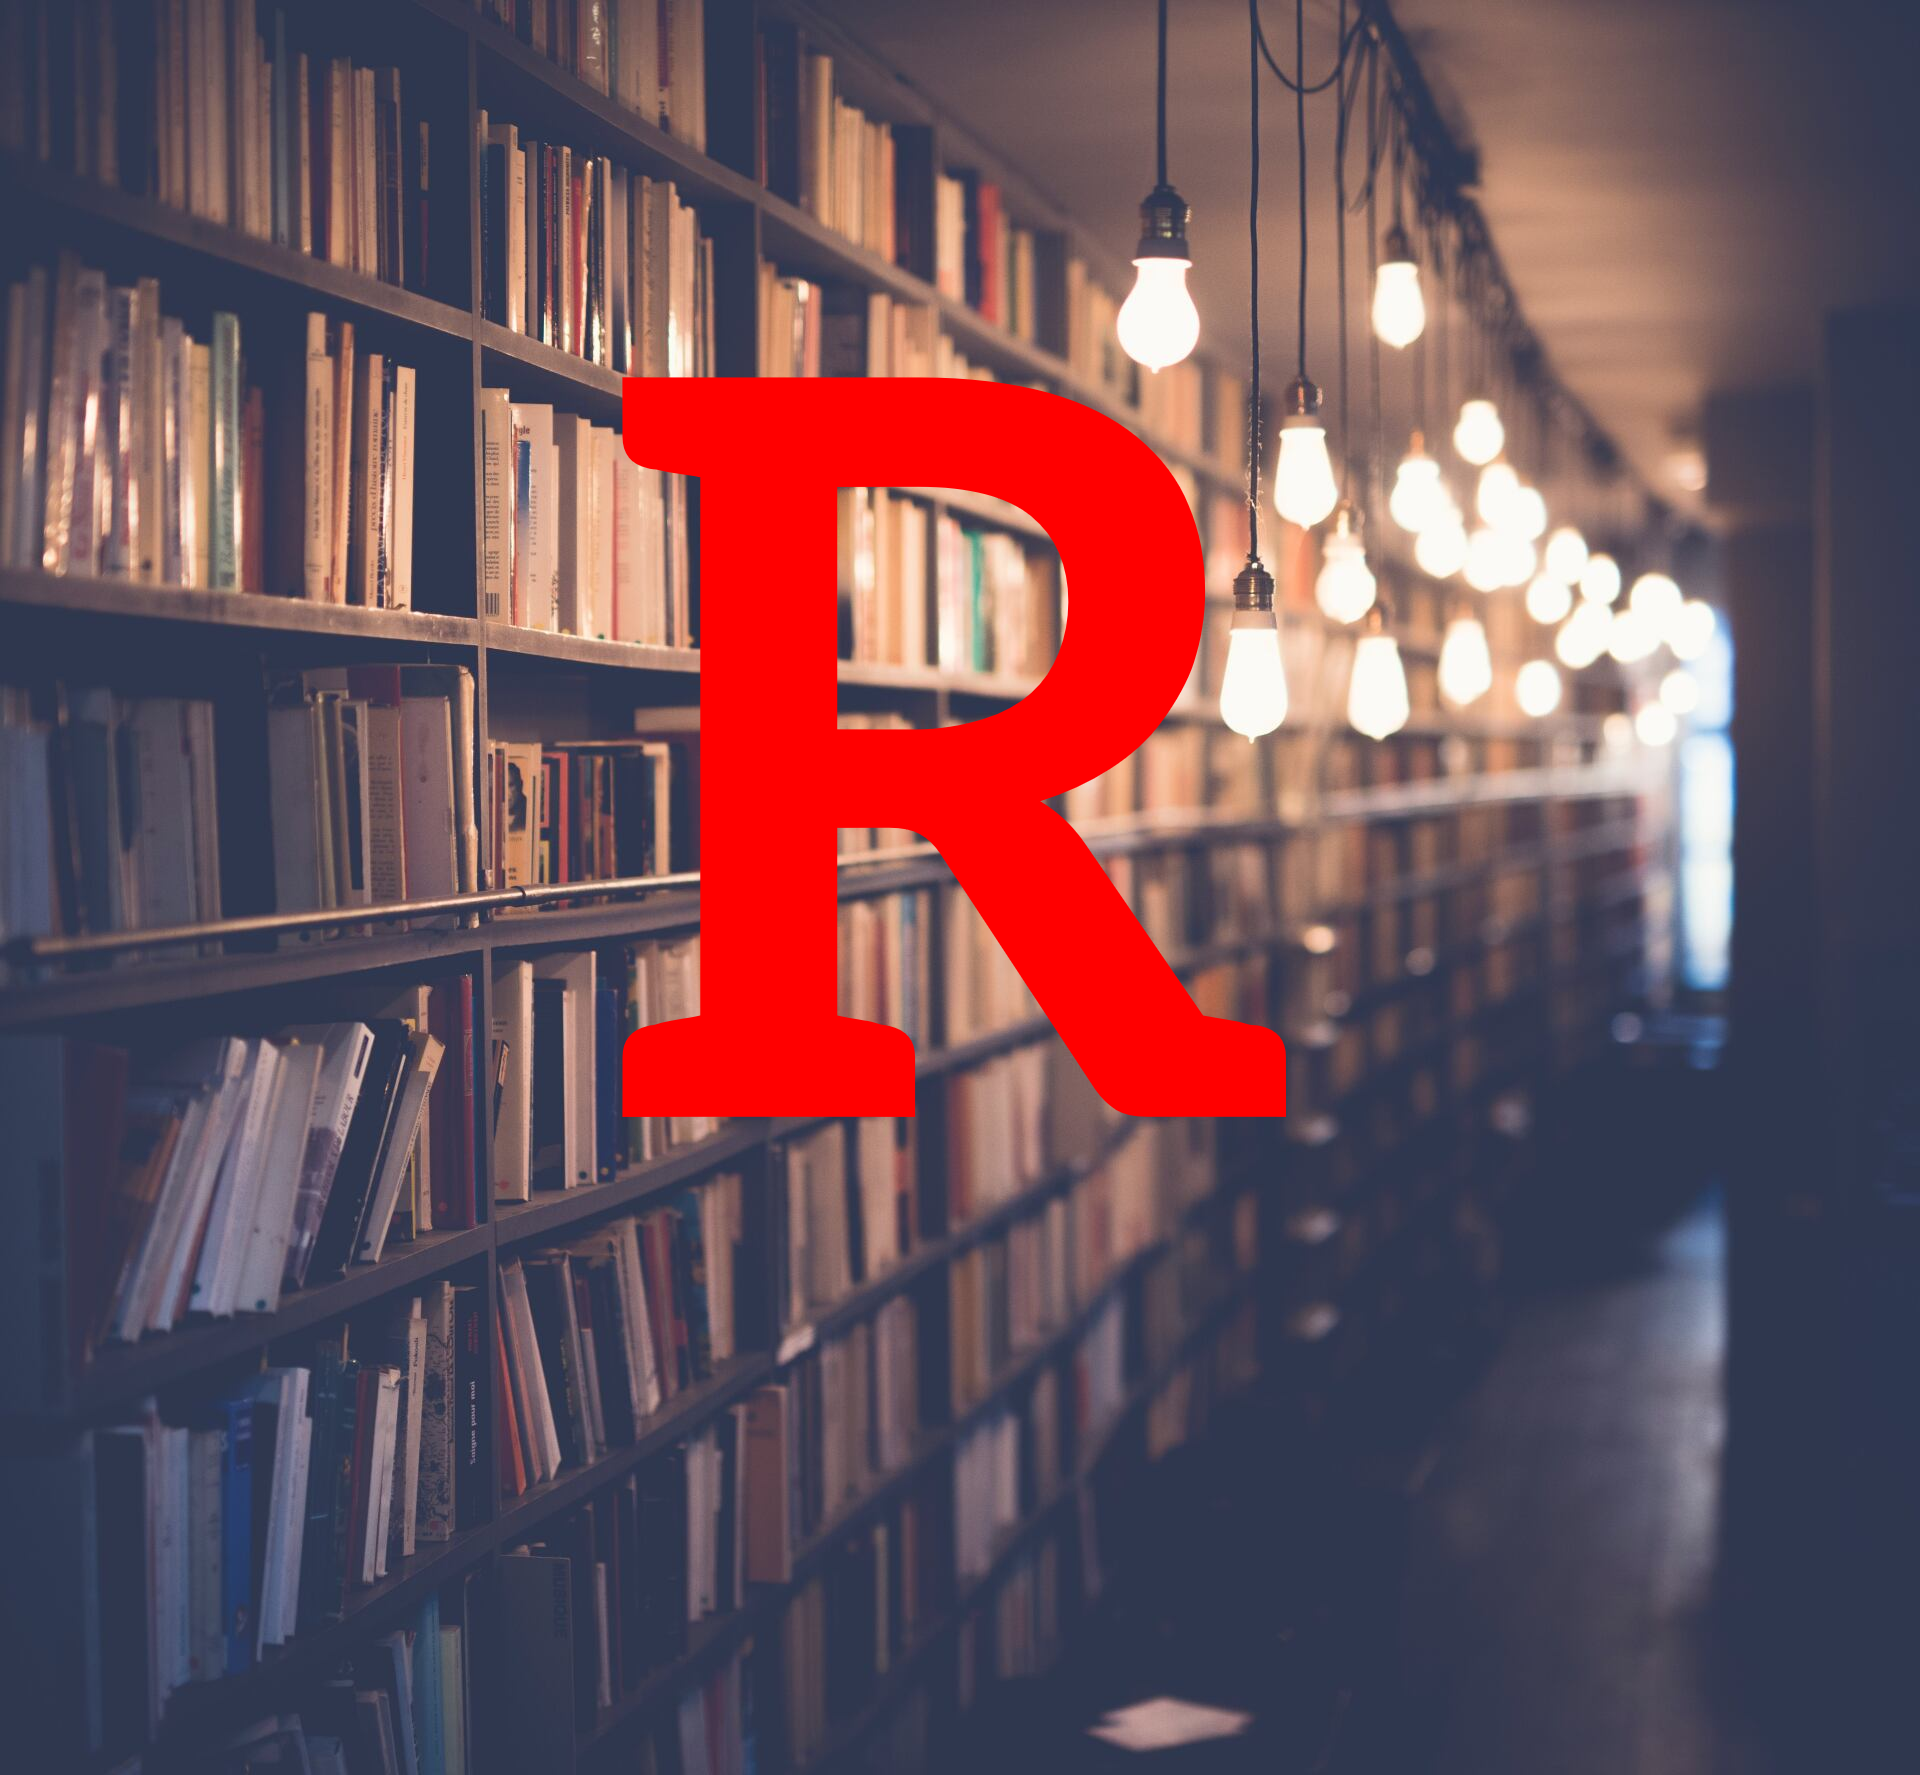 Bibliothek mit rotem Buchstabe R